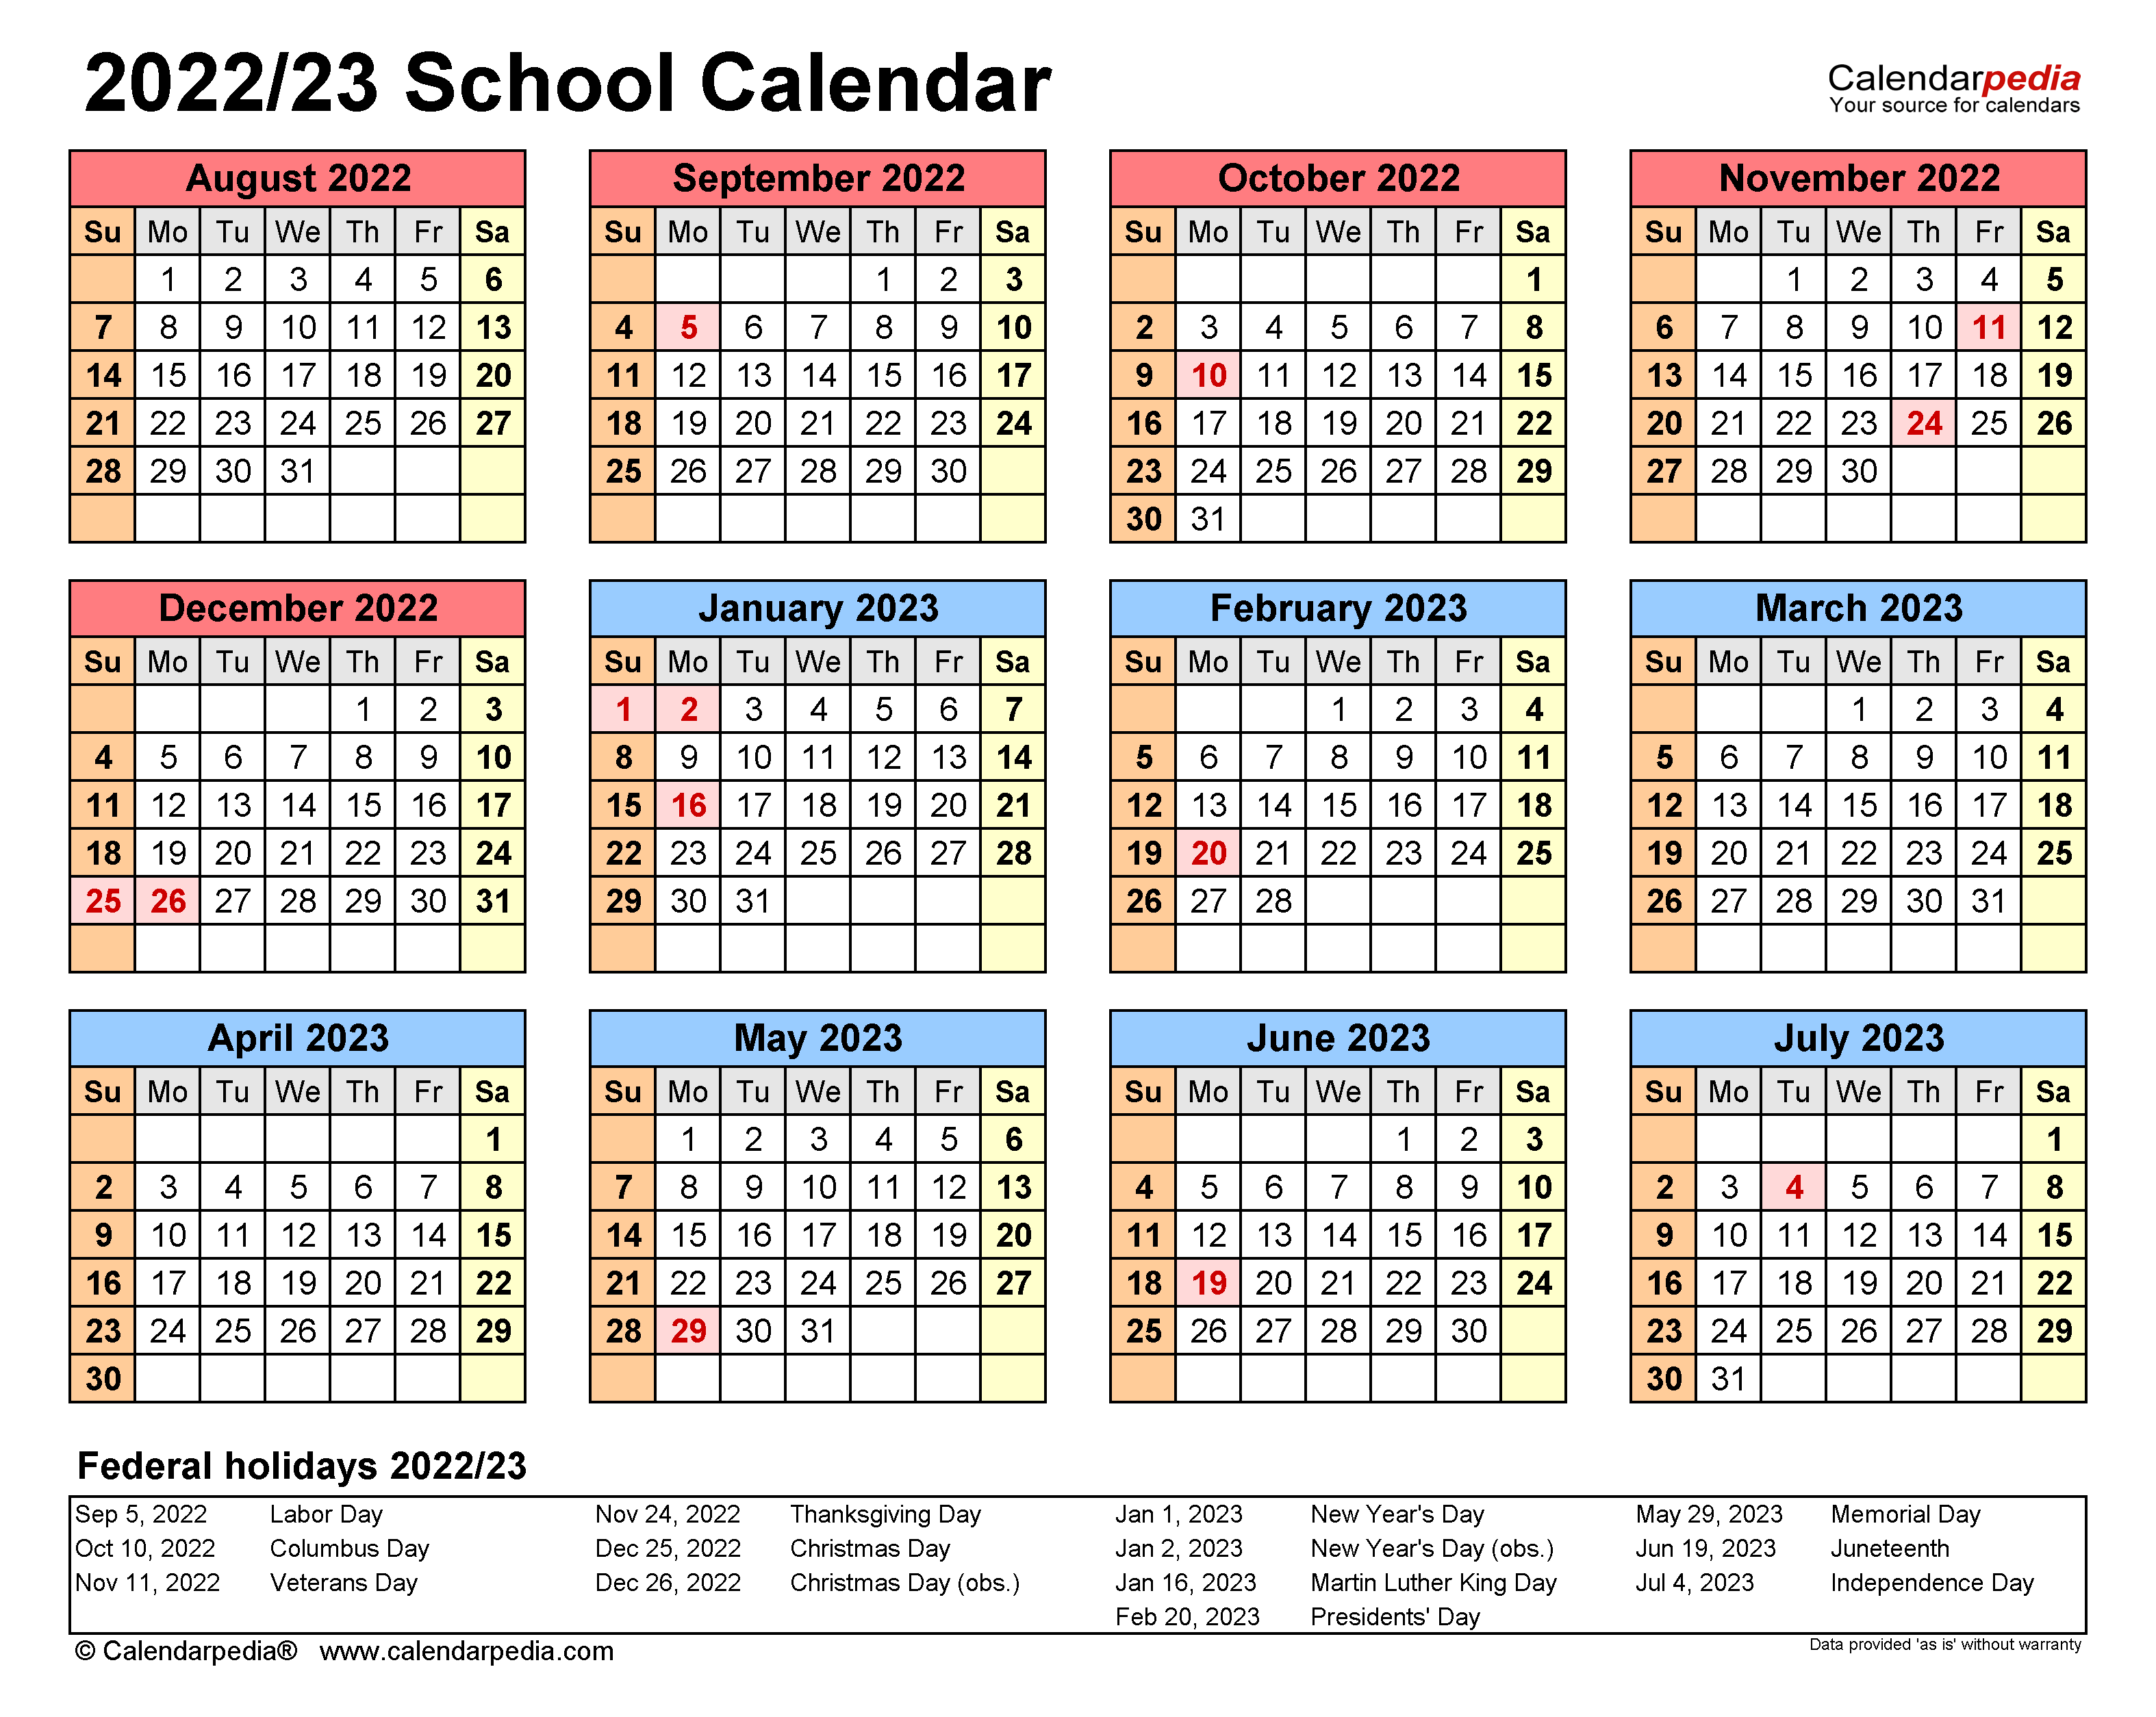 Cal Poly 202223 Calendar Customize and Print